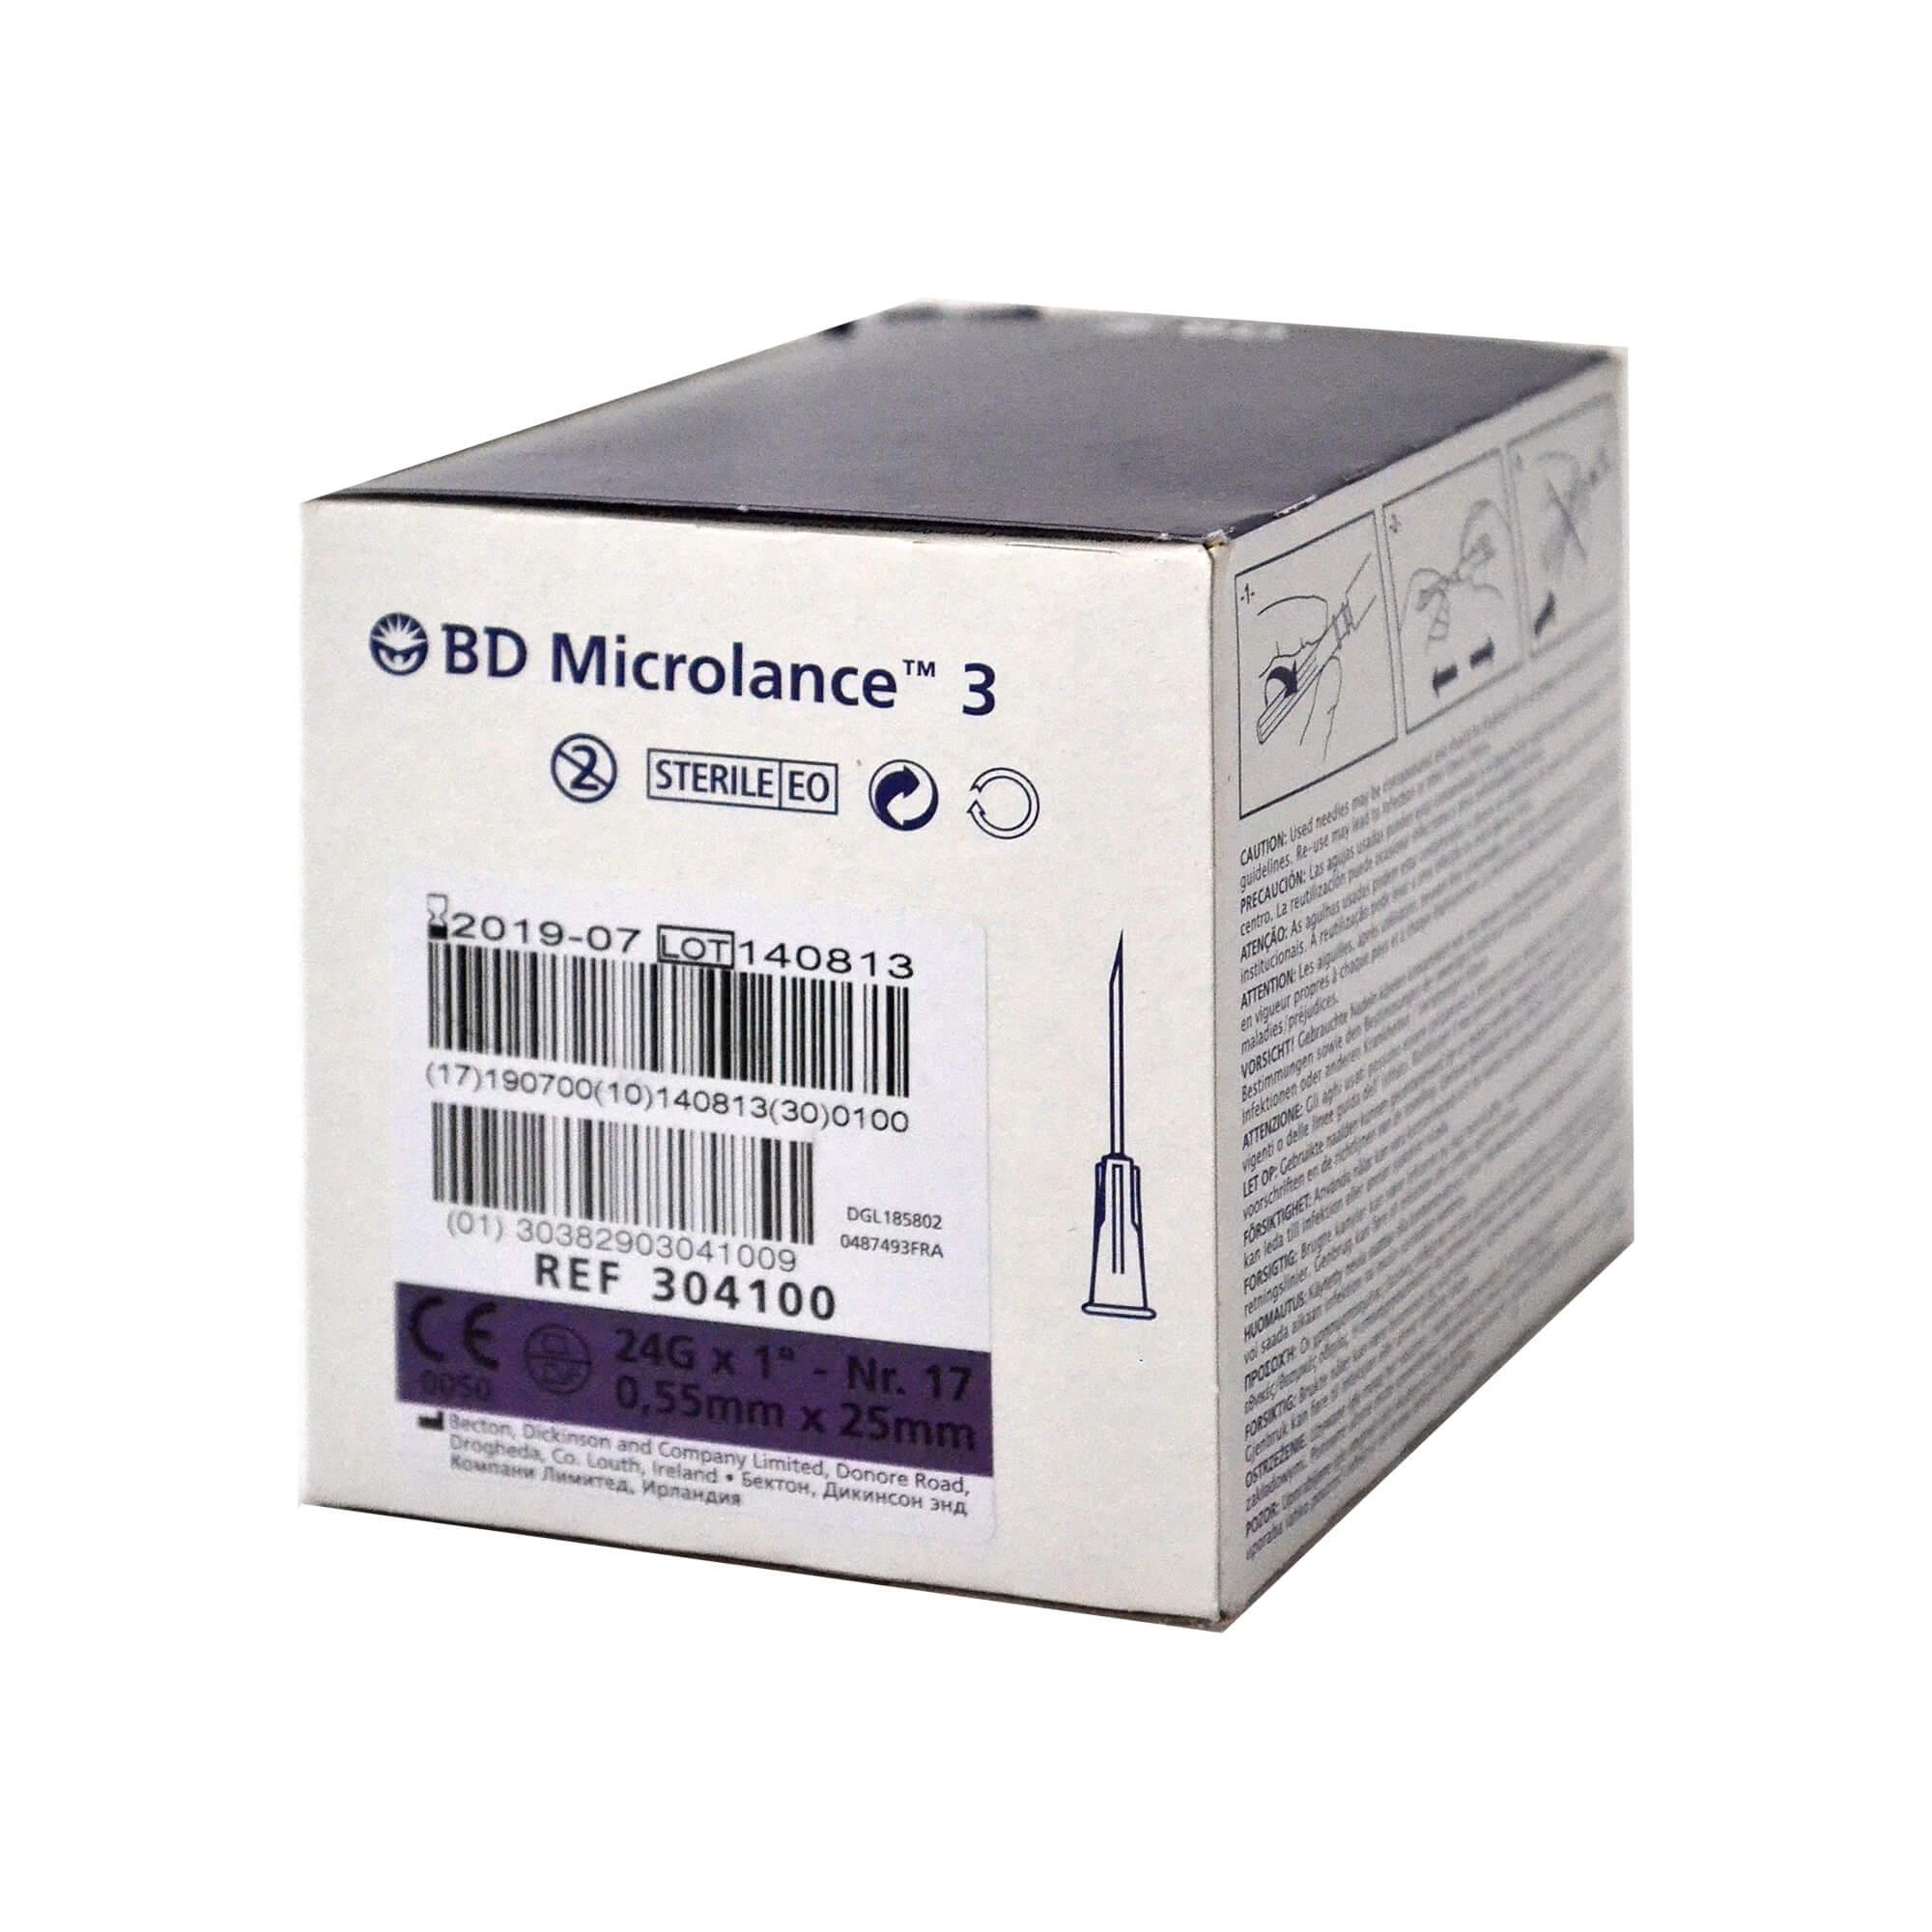 BD Microlance 3 Kanüle, 24 G x 1", Nr. 17, 0,55 mm x 25 mm.